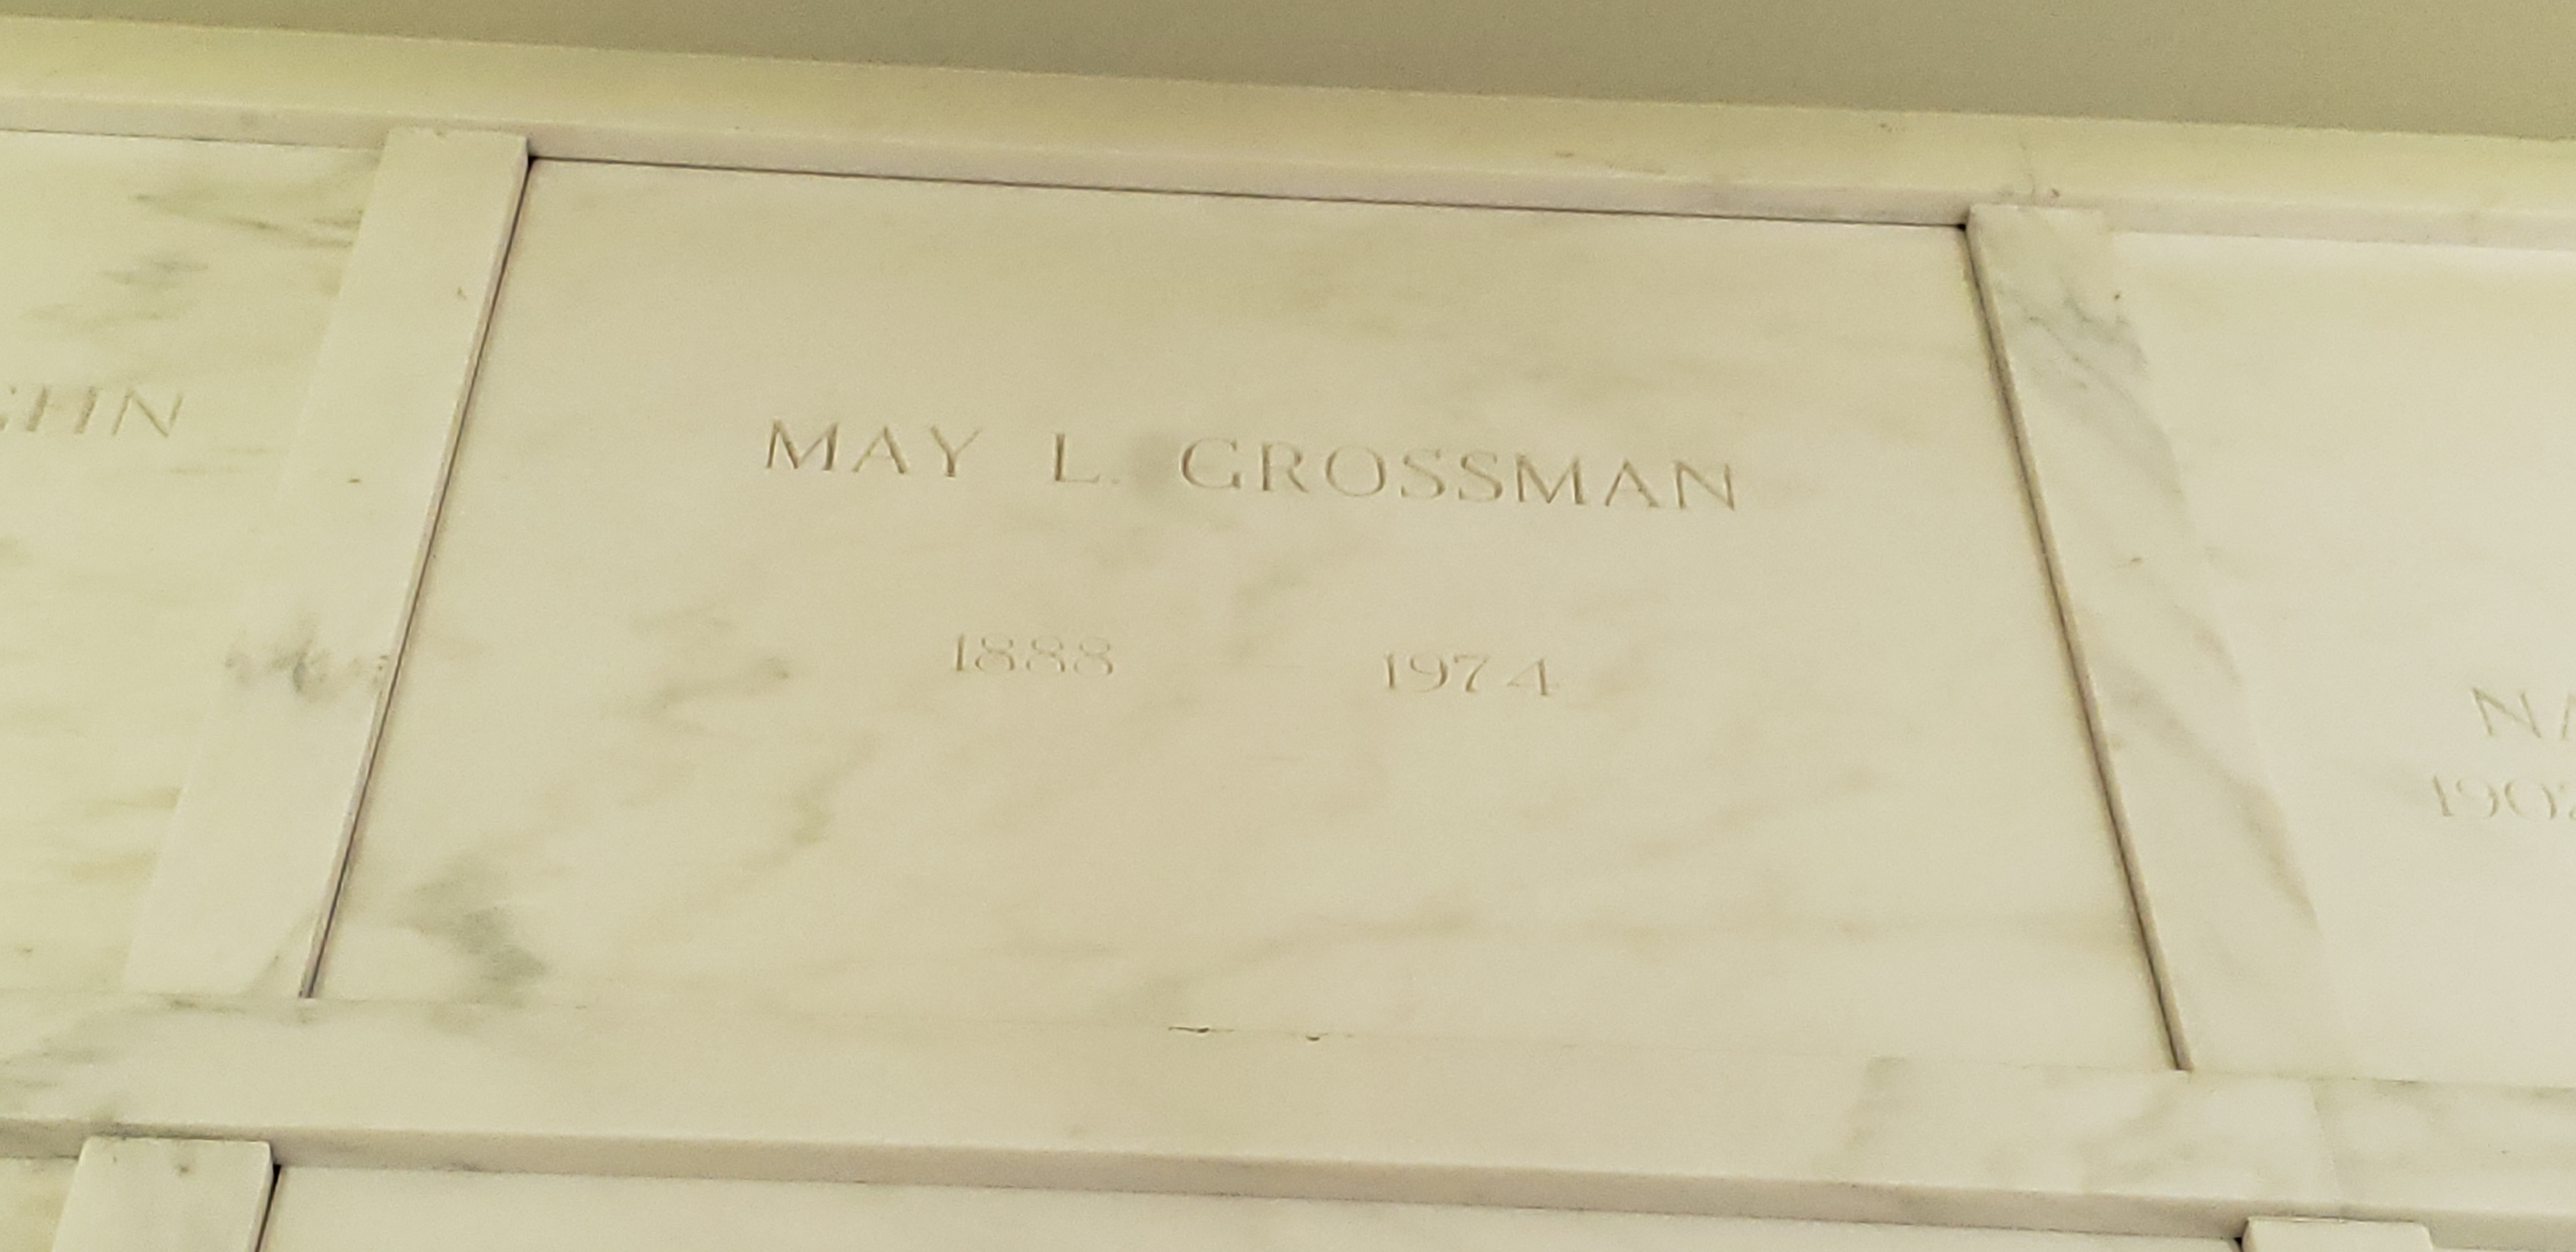 May L Grossman